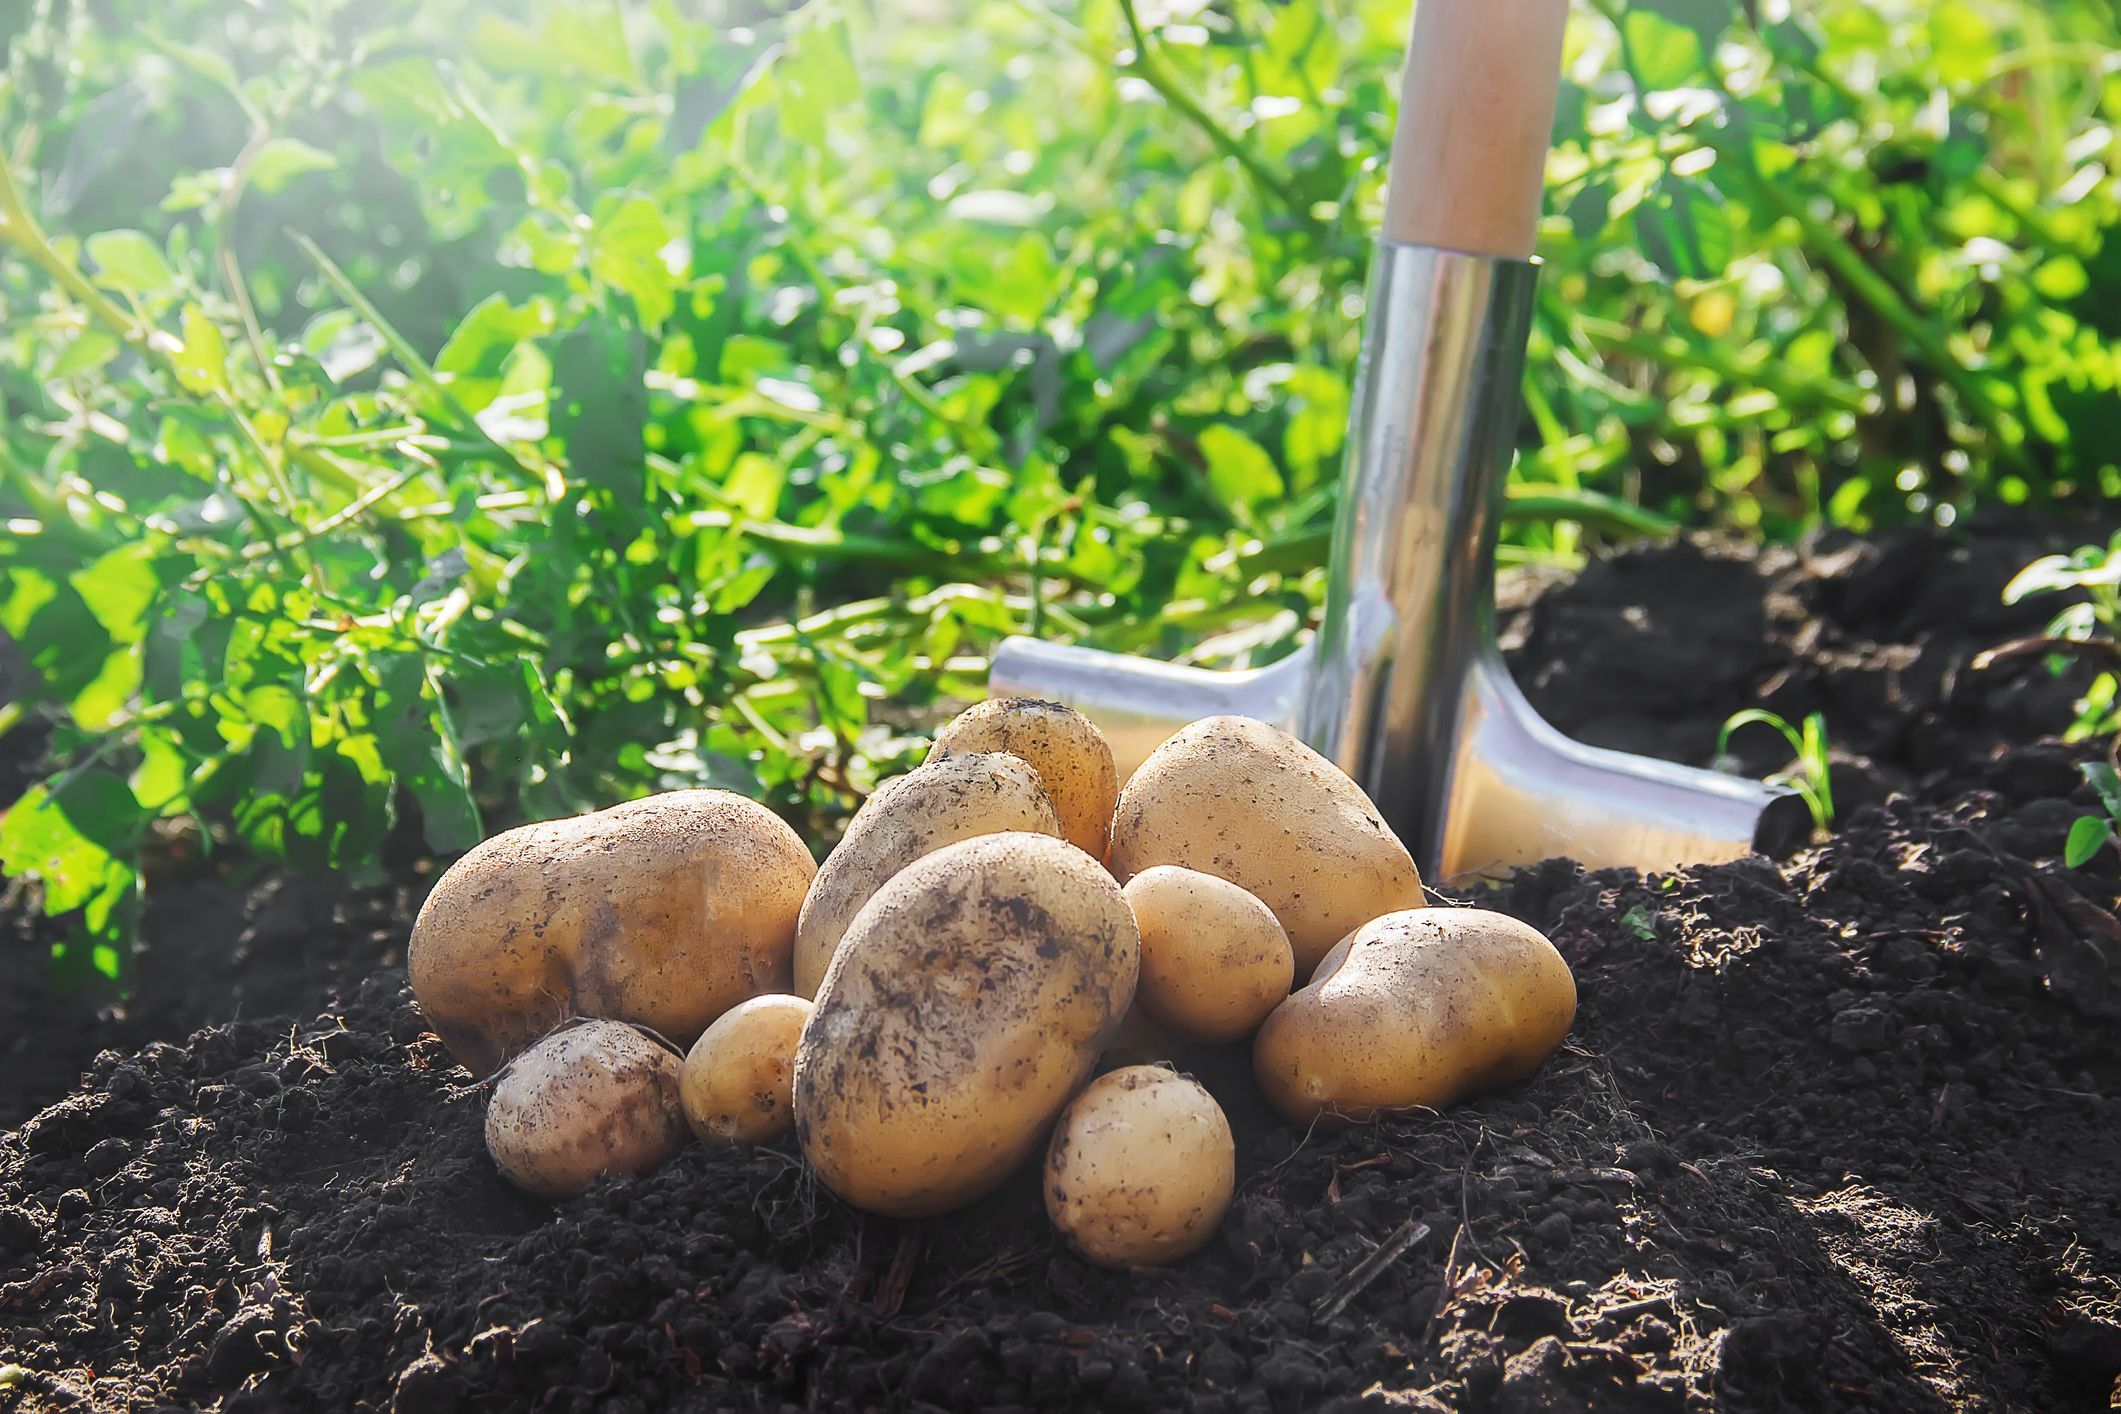 Perkembangbiakan bawang merah dan kentang dilakukan secara vegetatif alami dalam bentuk